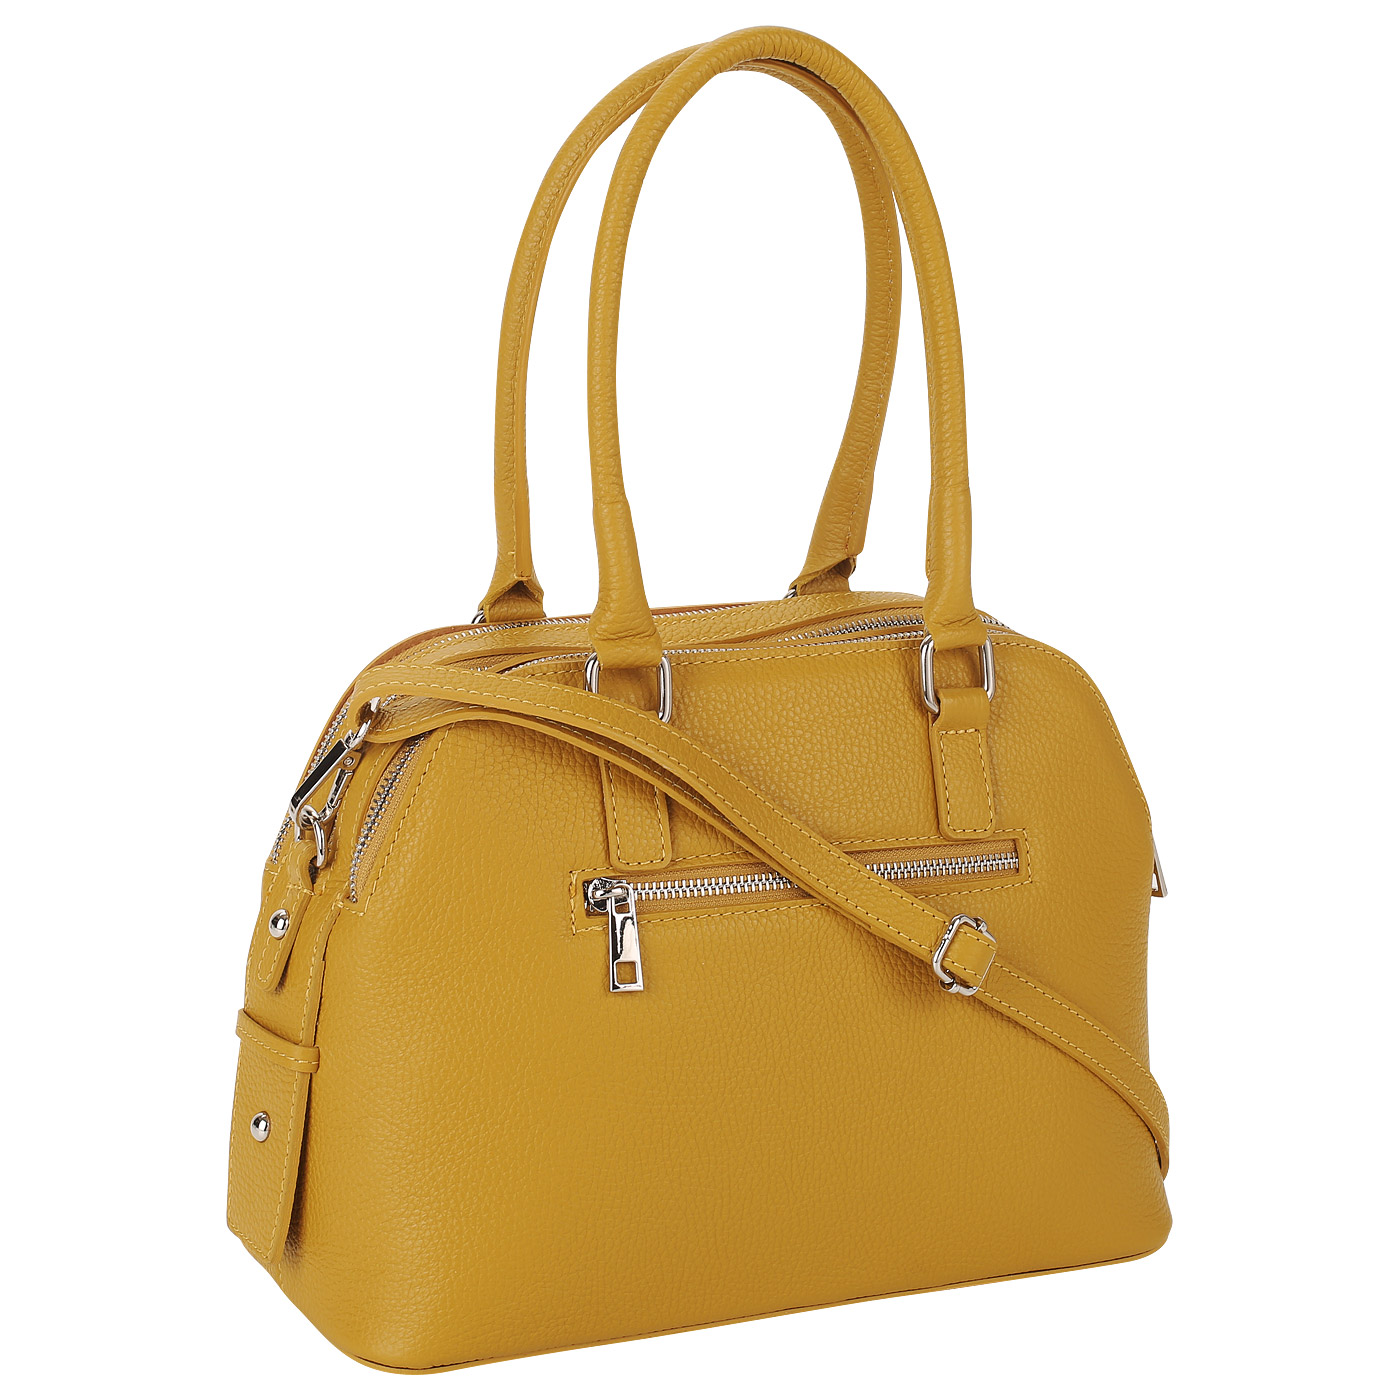 Желтая кожаная сумка Piumelli Sydney